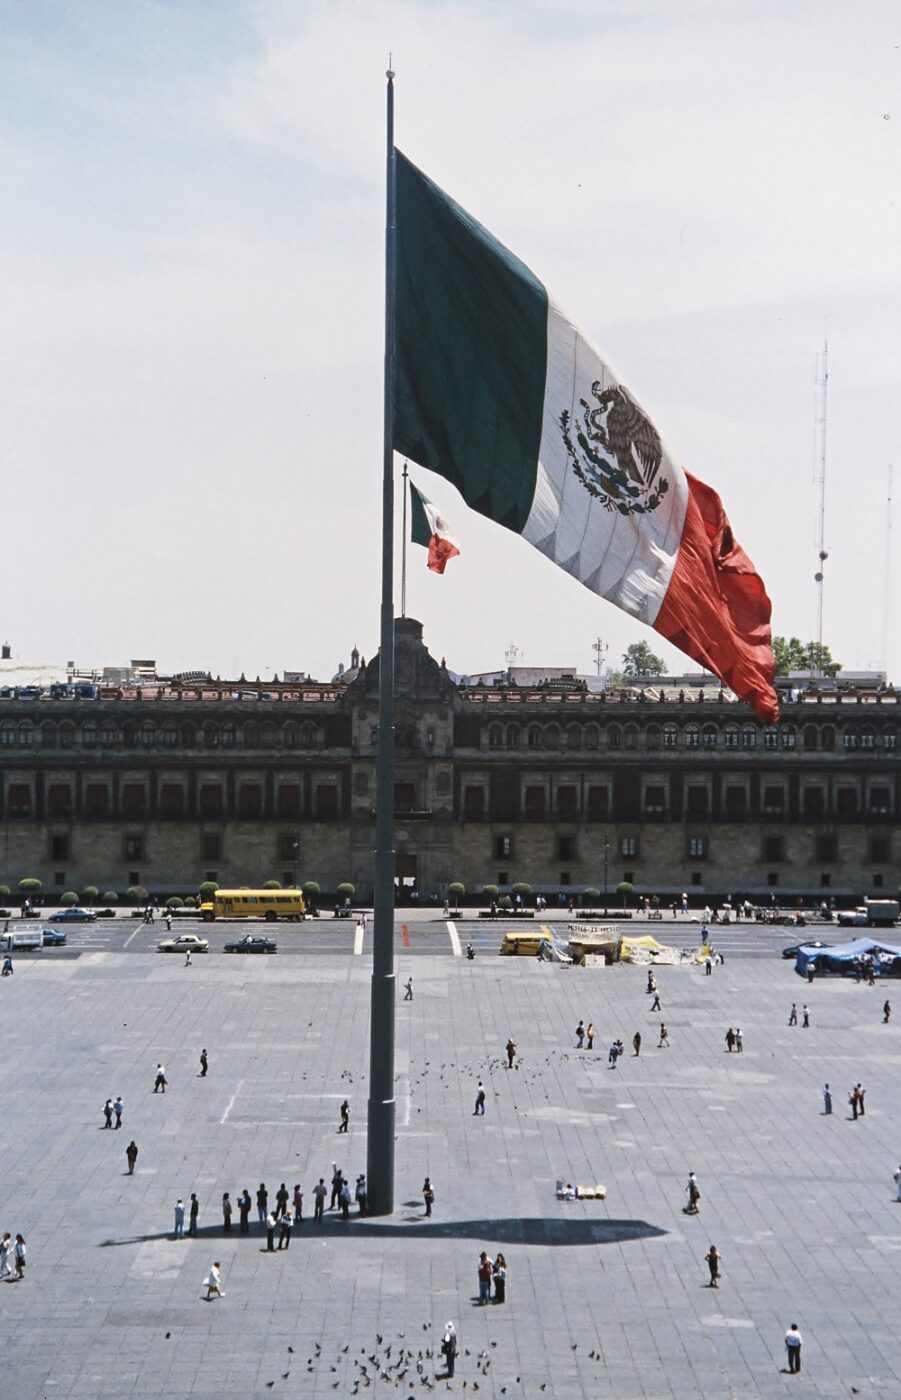 Der Hauptplatz - Zócalo - in Mexico City